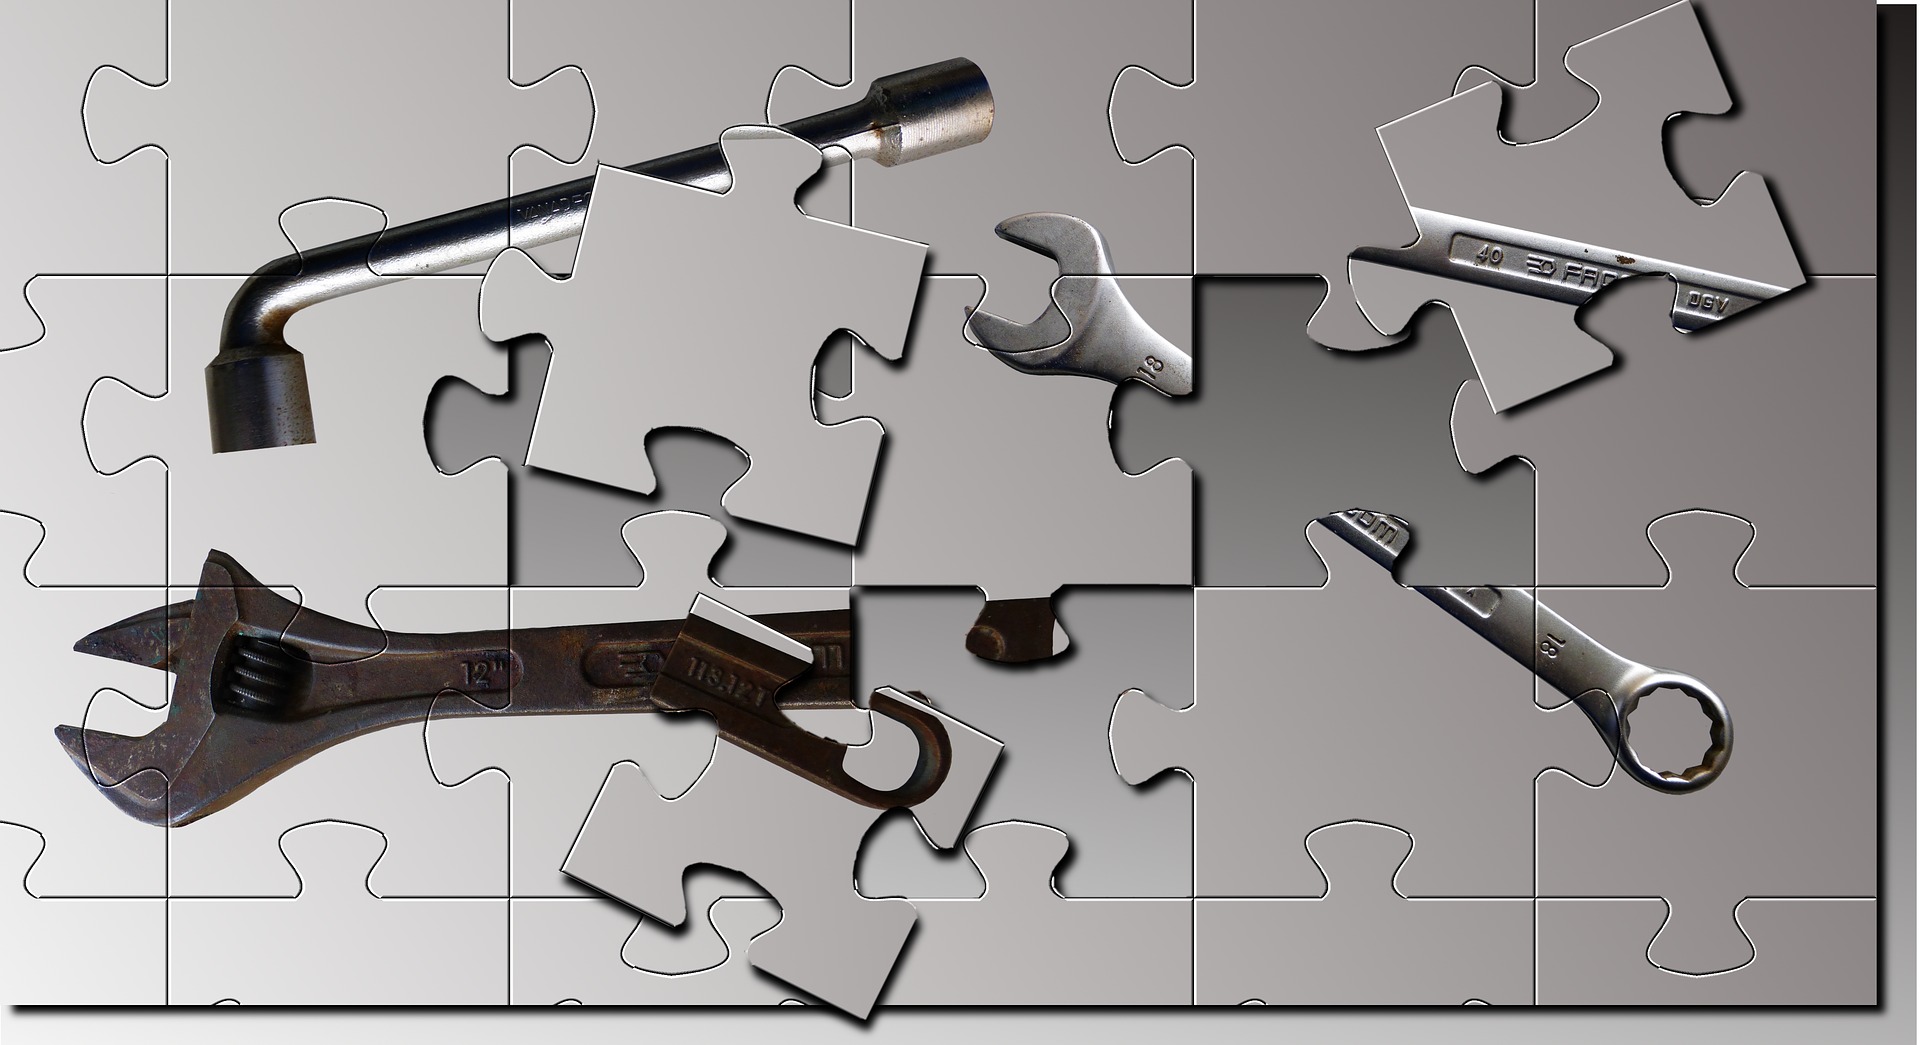 Bilden föreställer ett pussel med grå bakgrund, innehållande ett fälgkors, en skiftnyckel och en blocknyckel. Tre av bitarna i pusslet ligger fel, vilket resulterar i hål i bilden.